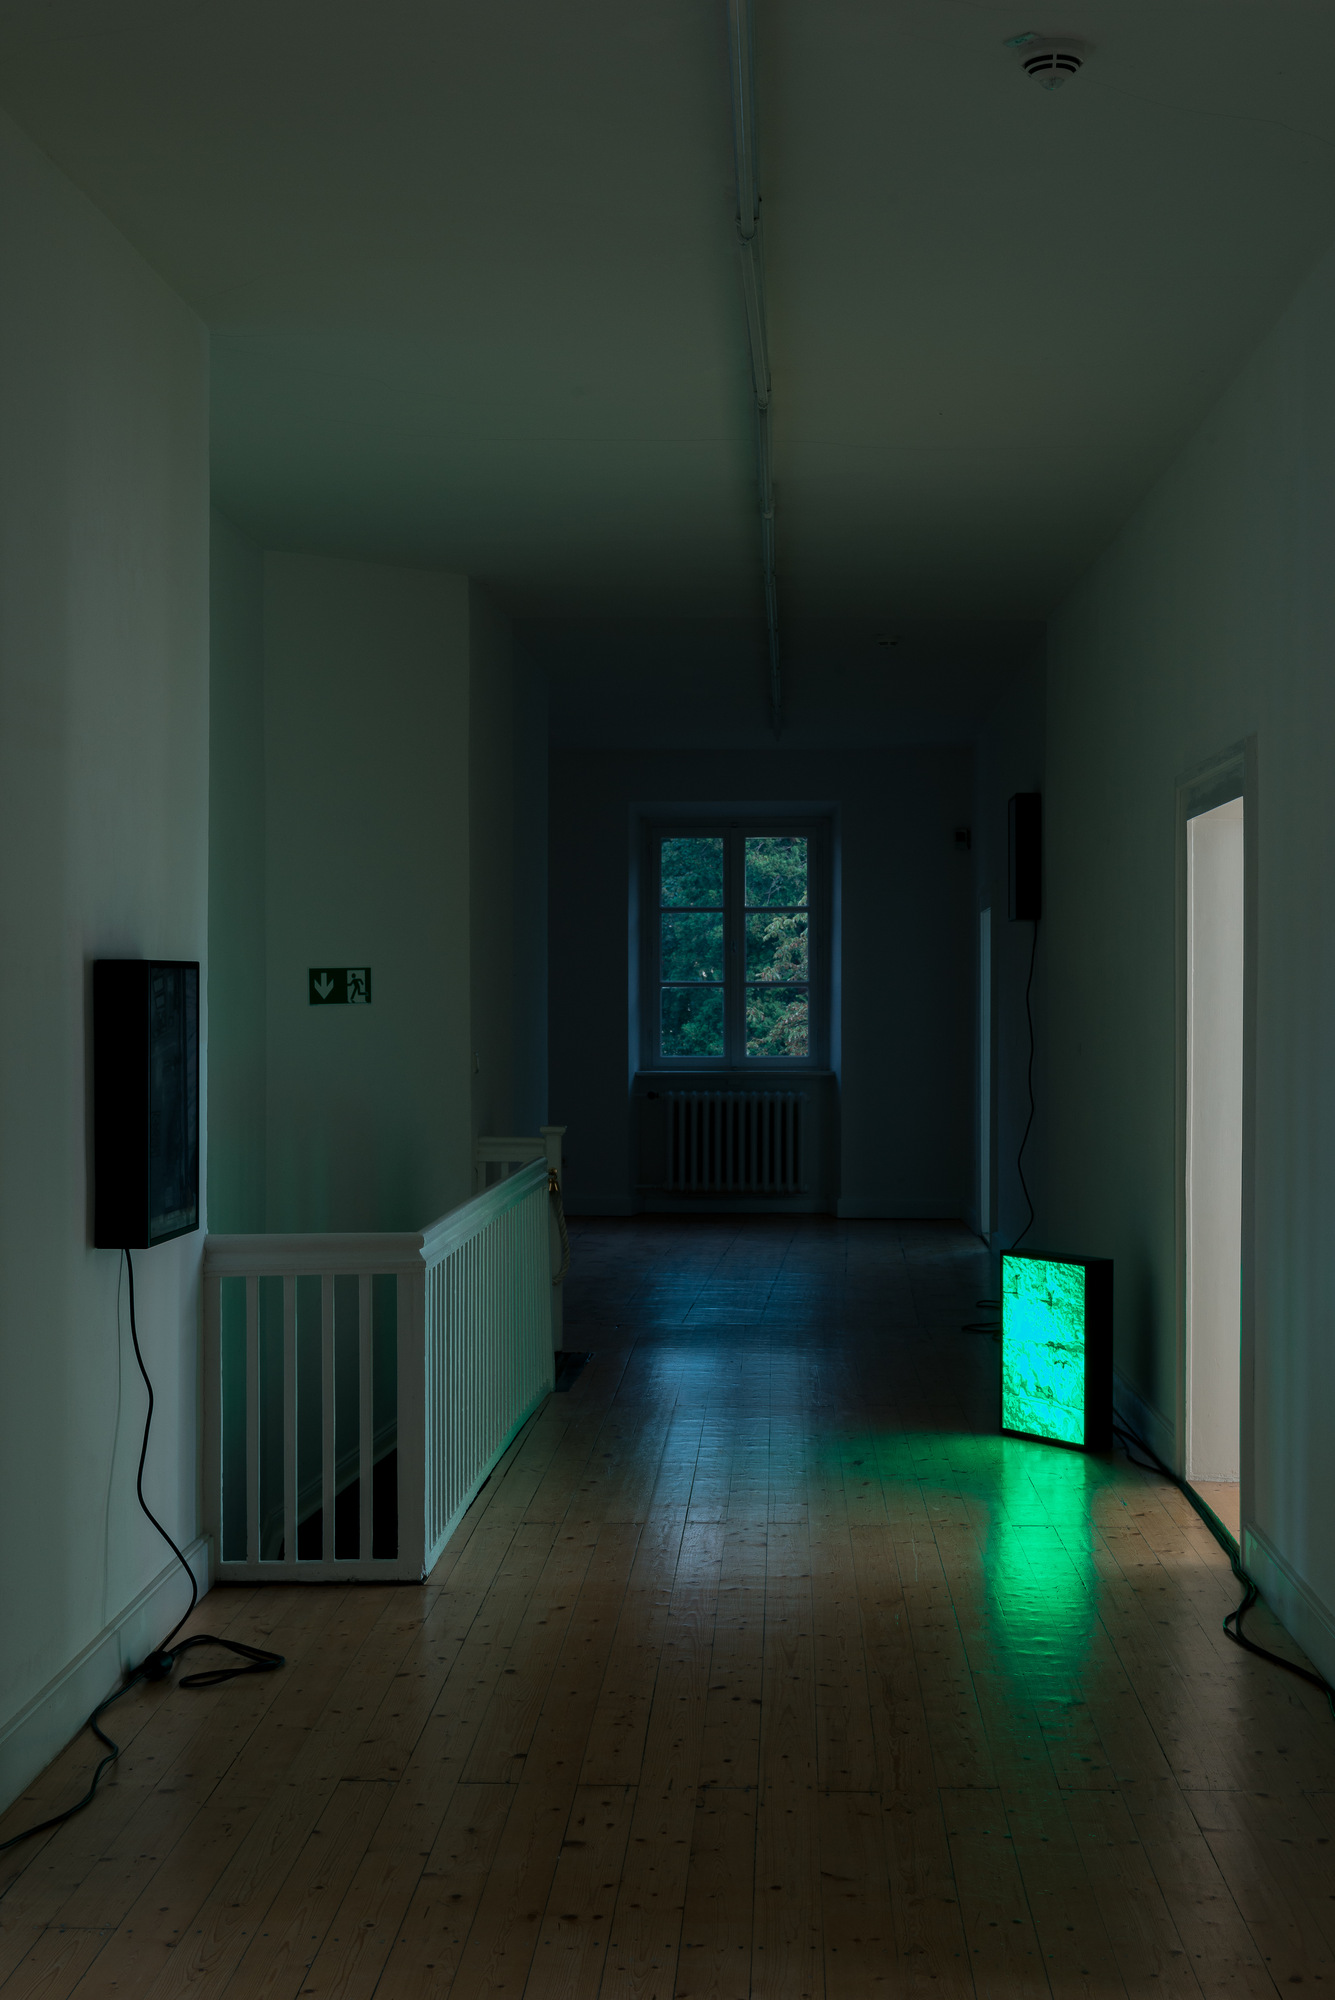 Open House at Kunstverein Braunschweig_Baldi_Schulze 1